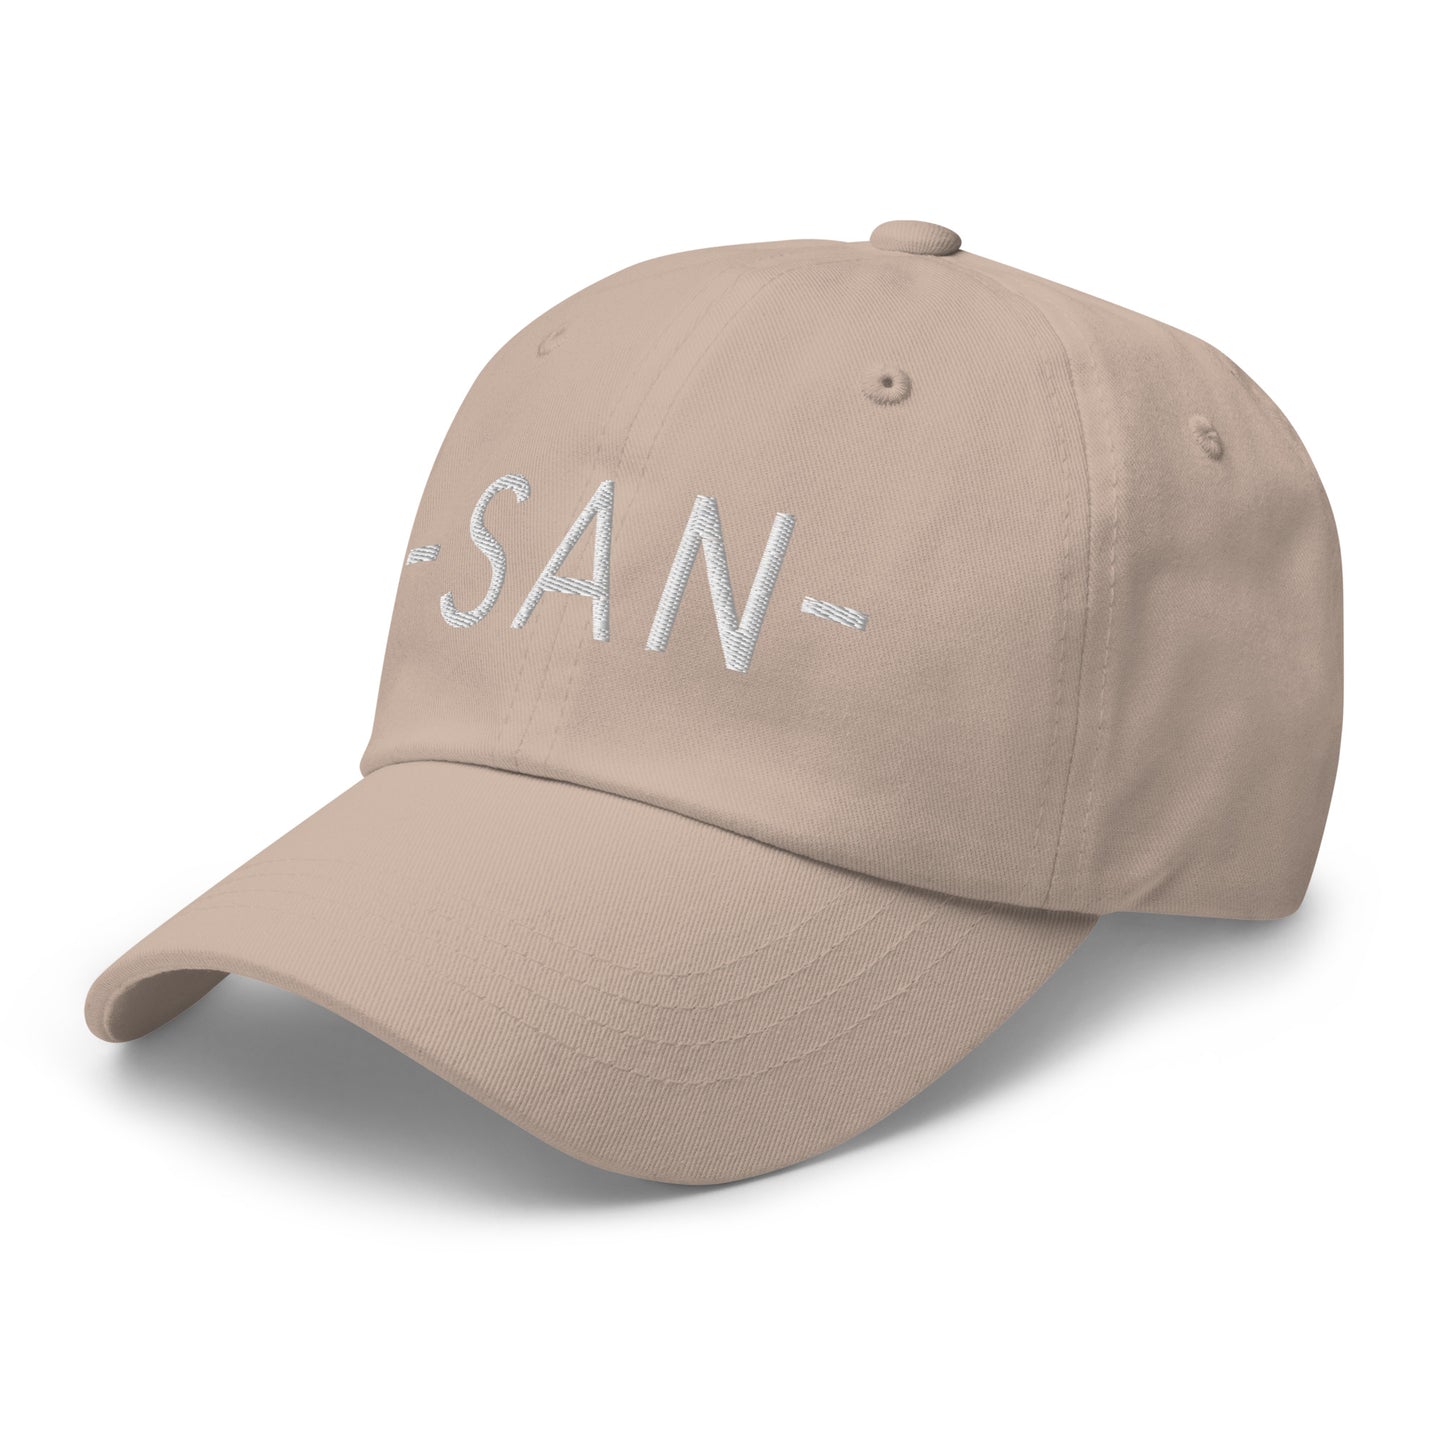 Souvenir Baseball Cap - White • SAN San Diego • YHM Designs - Image 24